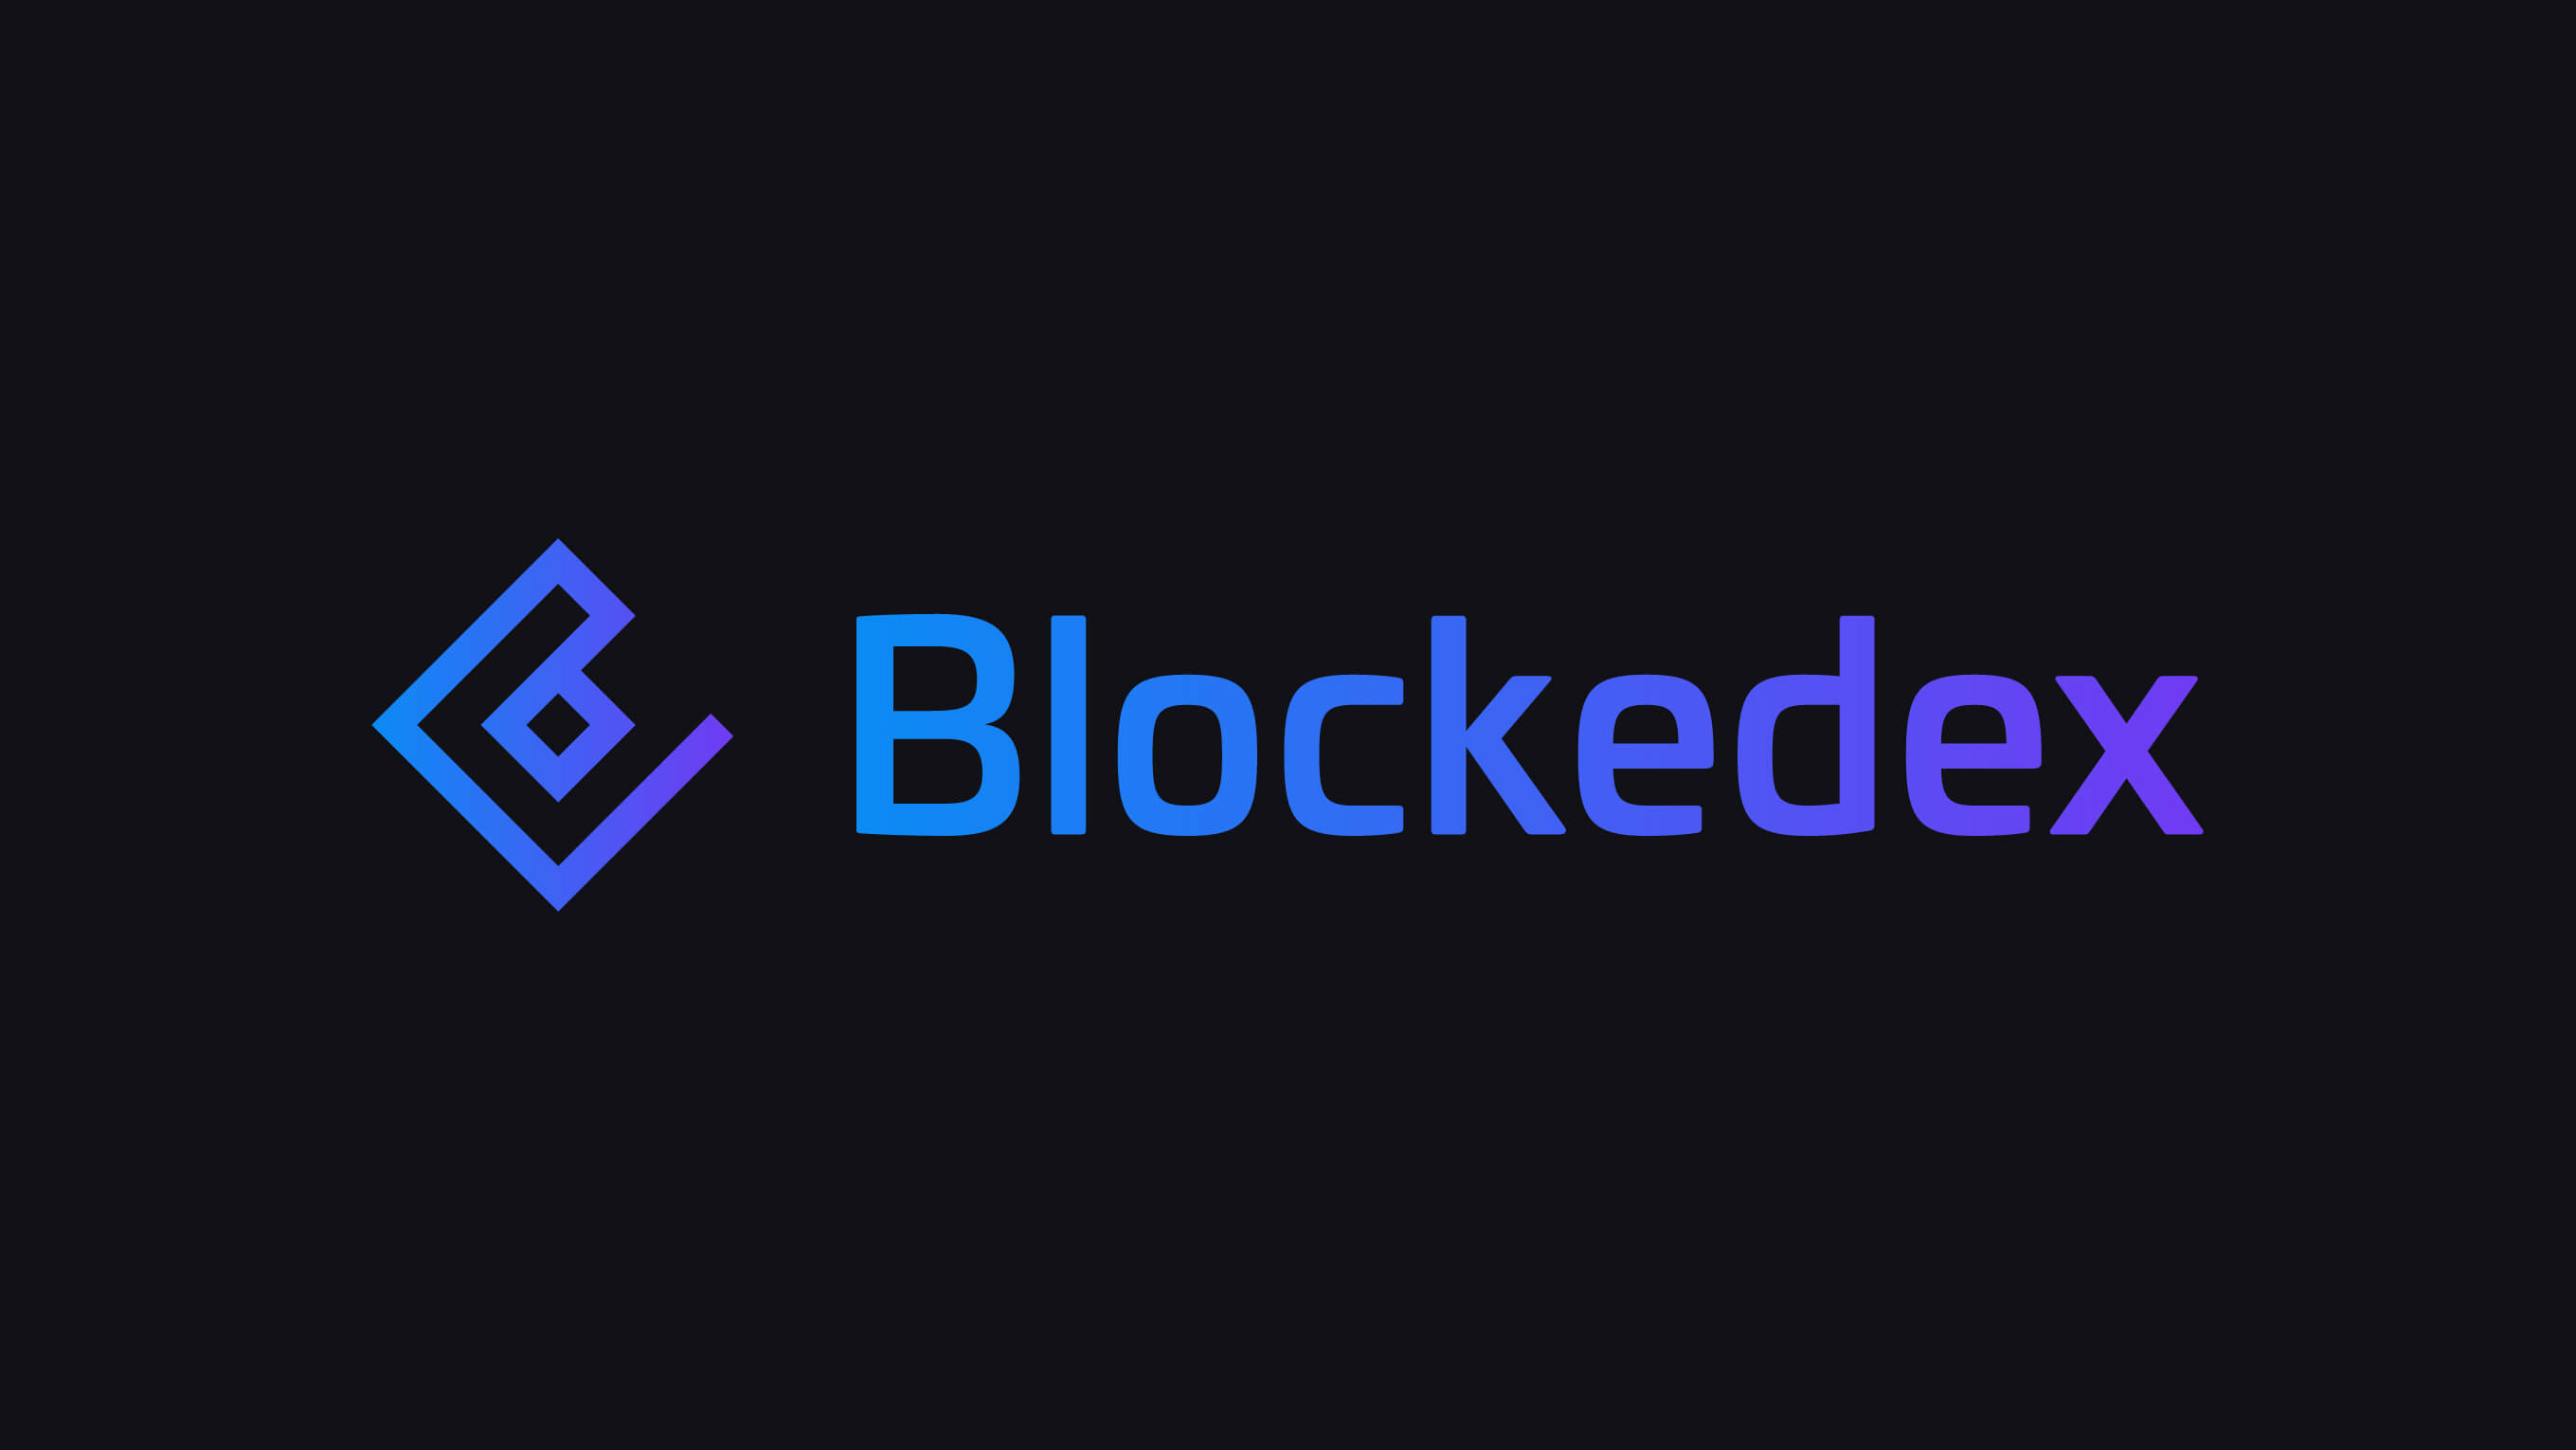 Blockedex